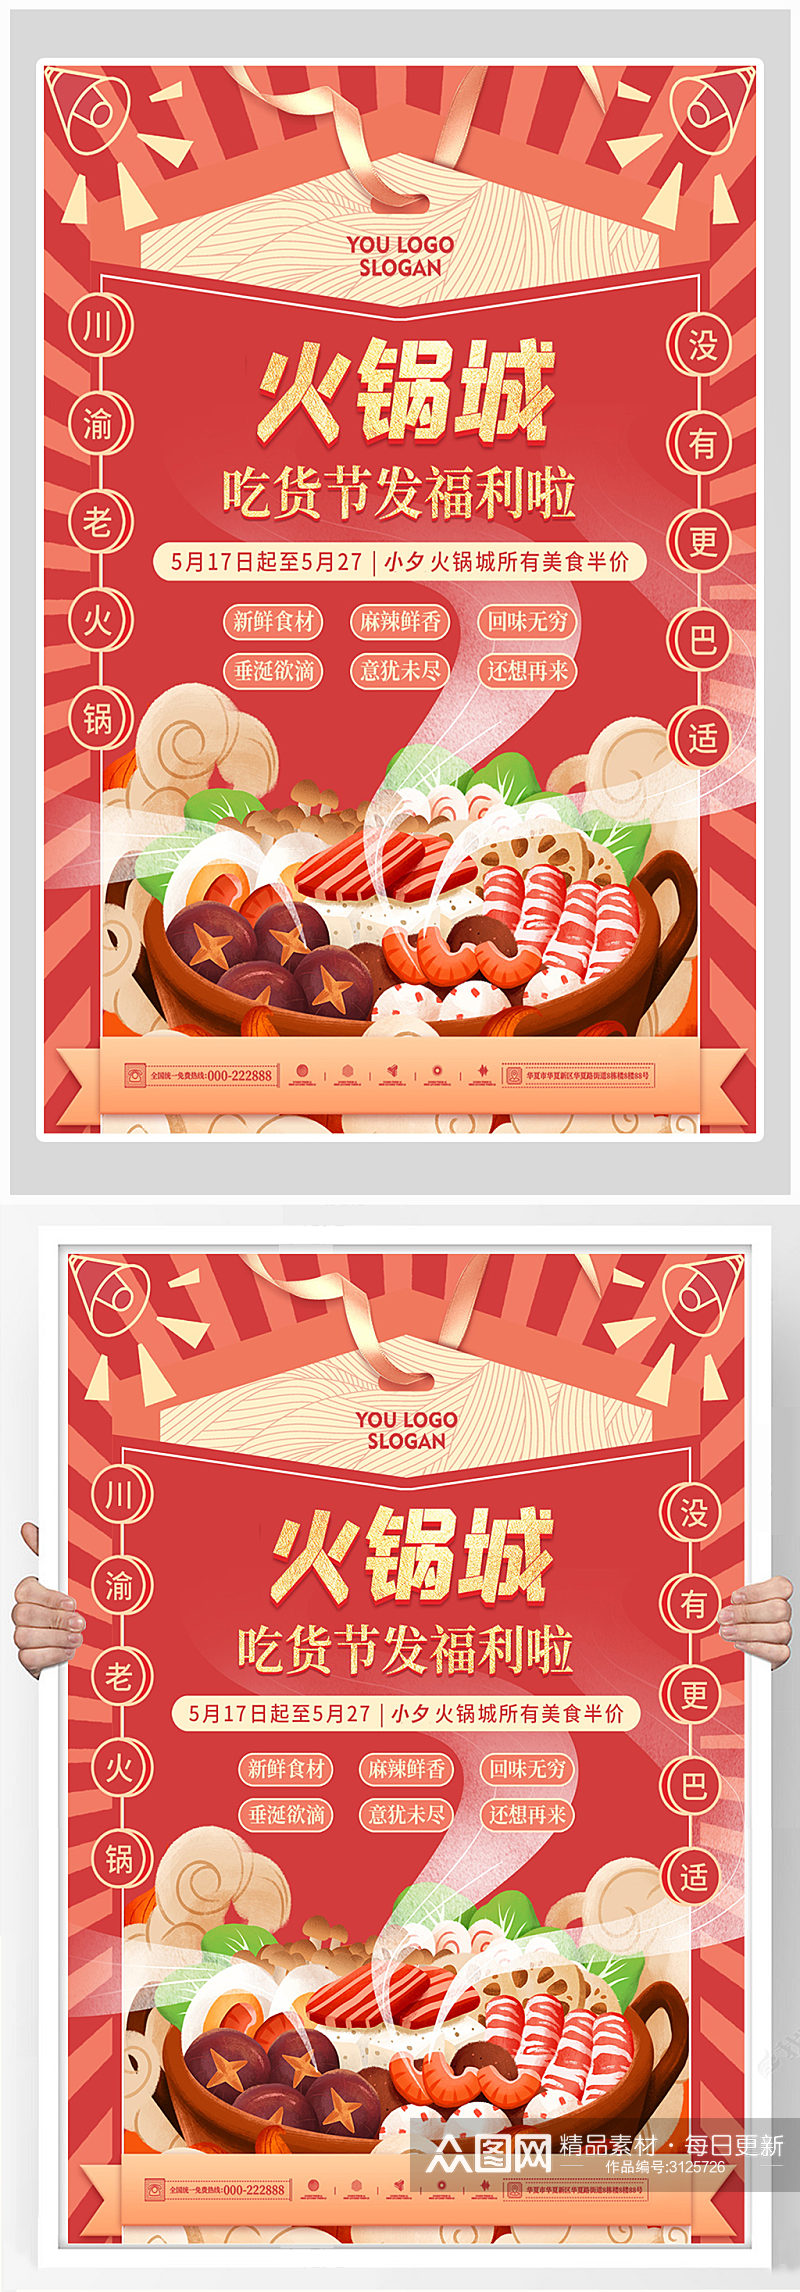 创意简约火锅美食海报设计素材